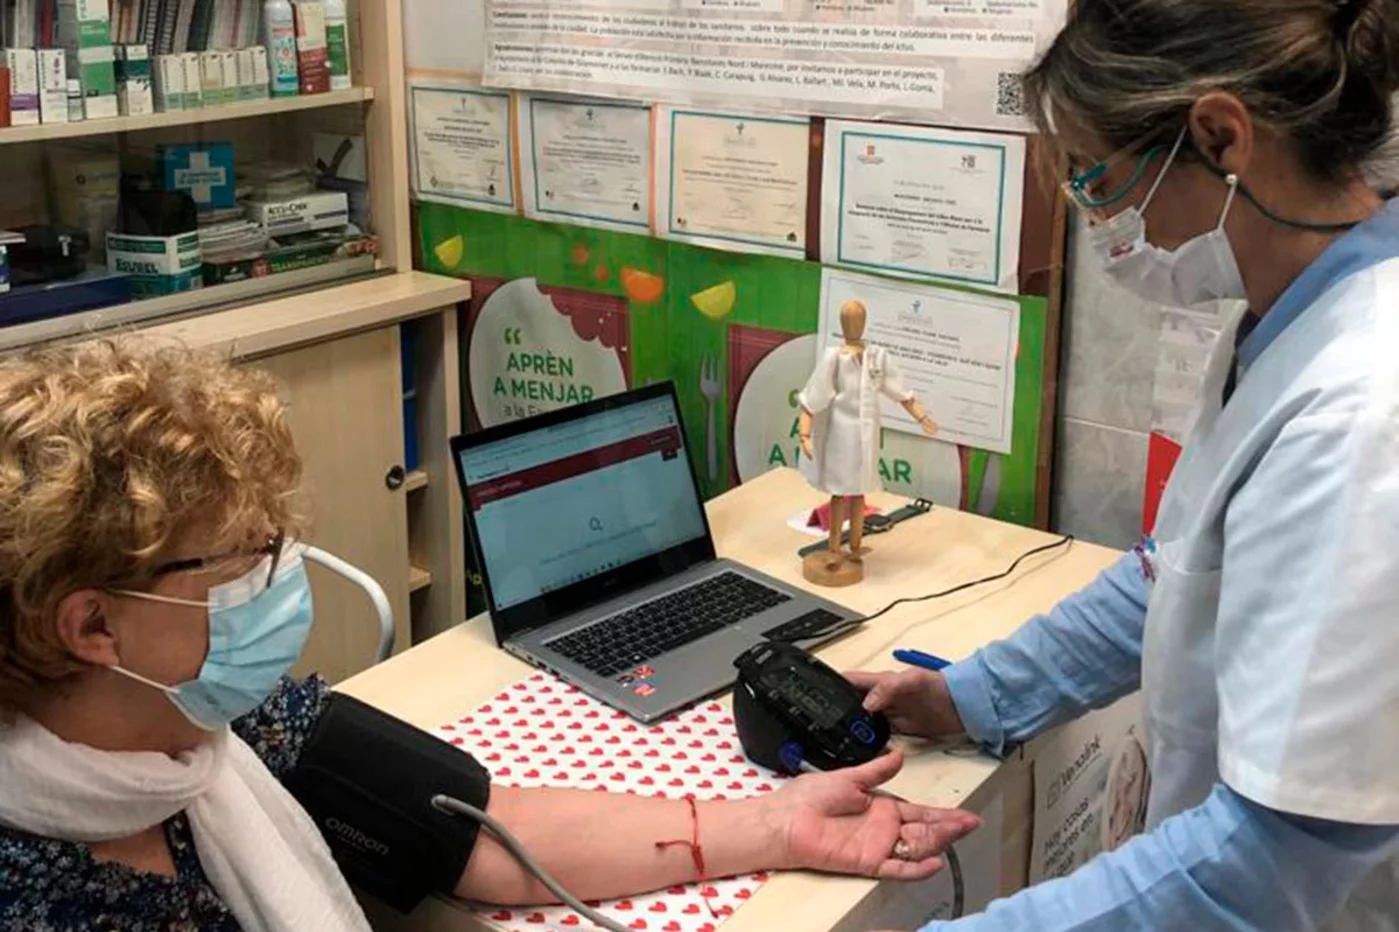 Montse Iracheta realiza la toma de la presión arterial según los protocolos y registra todos los datos.